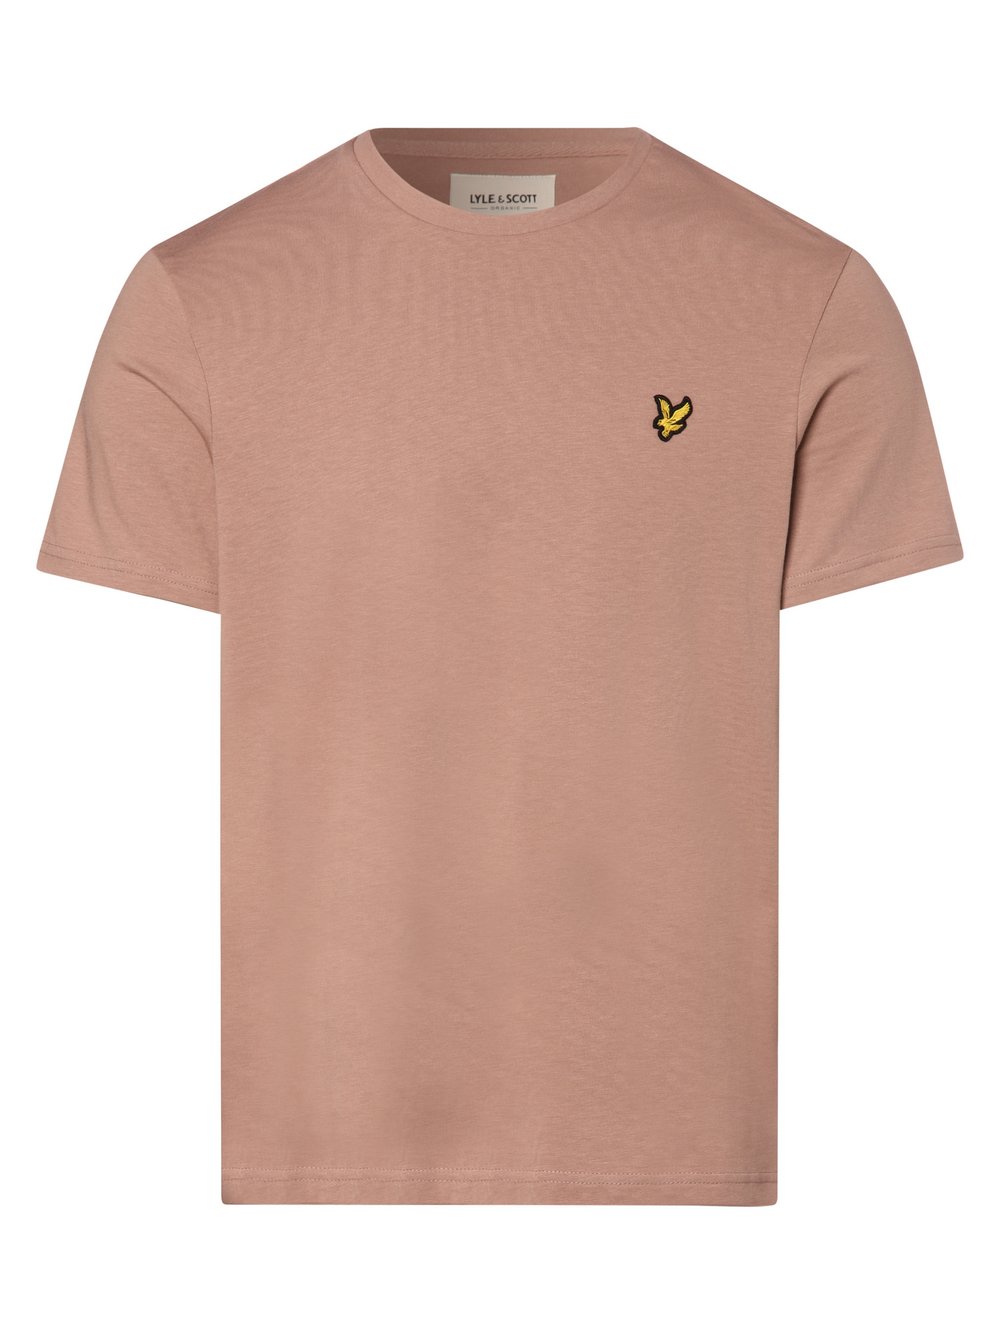 Lyle & Scott - T-shirt męski, różowy